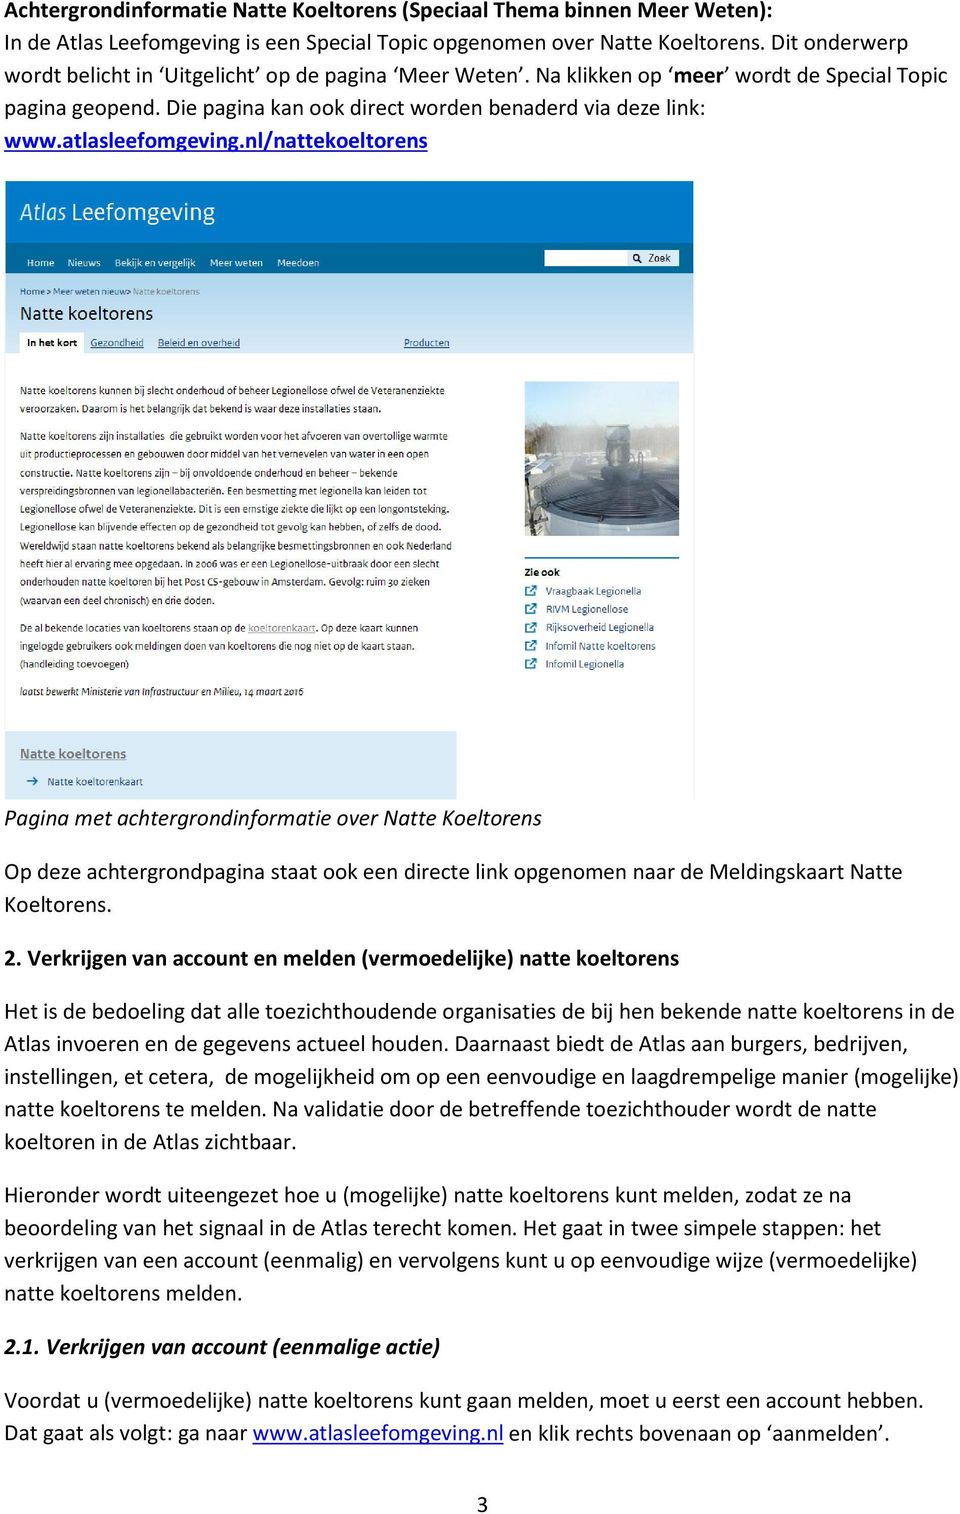 atlasleefomgeving.nl/nattekoeltorens Pagina met achtergrondinformatie over Natte Koeltorens Op deze achtergrondpagina staat ook een directe link opgenomen naar de Meldingskaart Natte Koeltorens. 2.